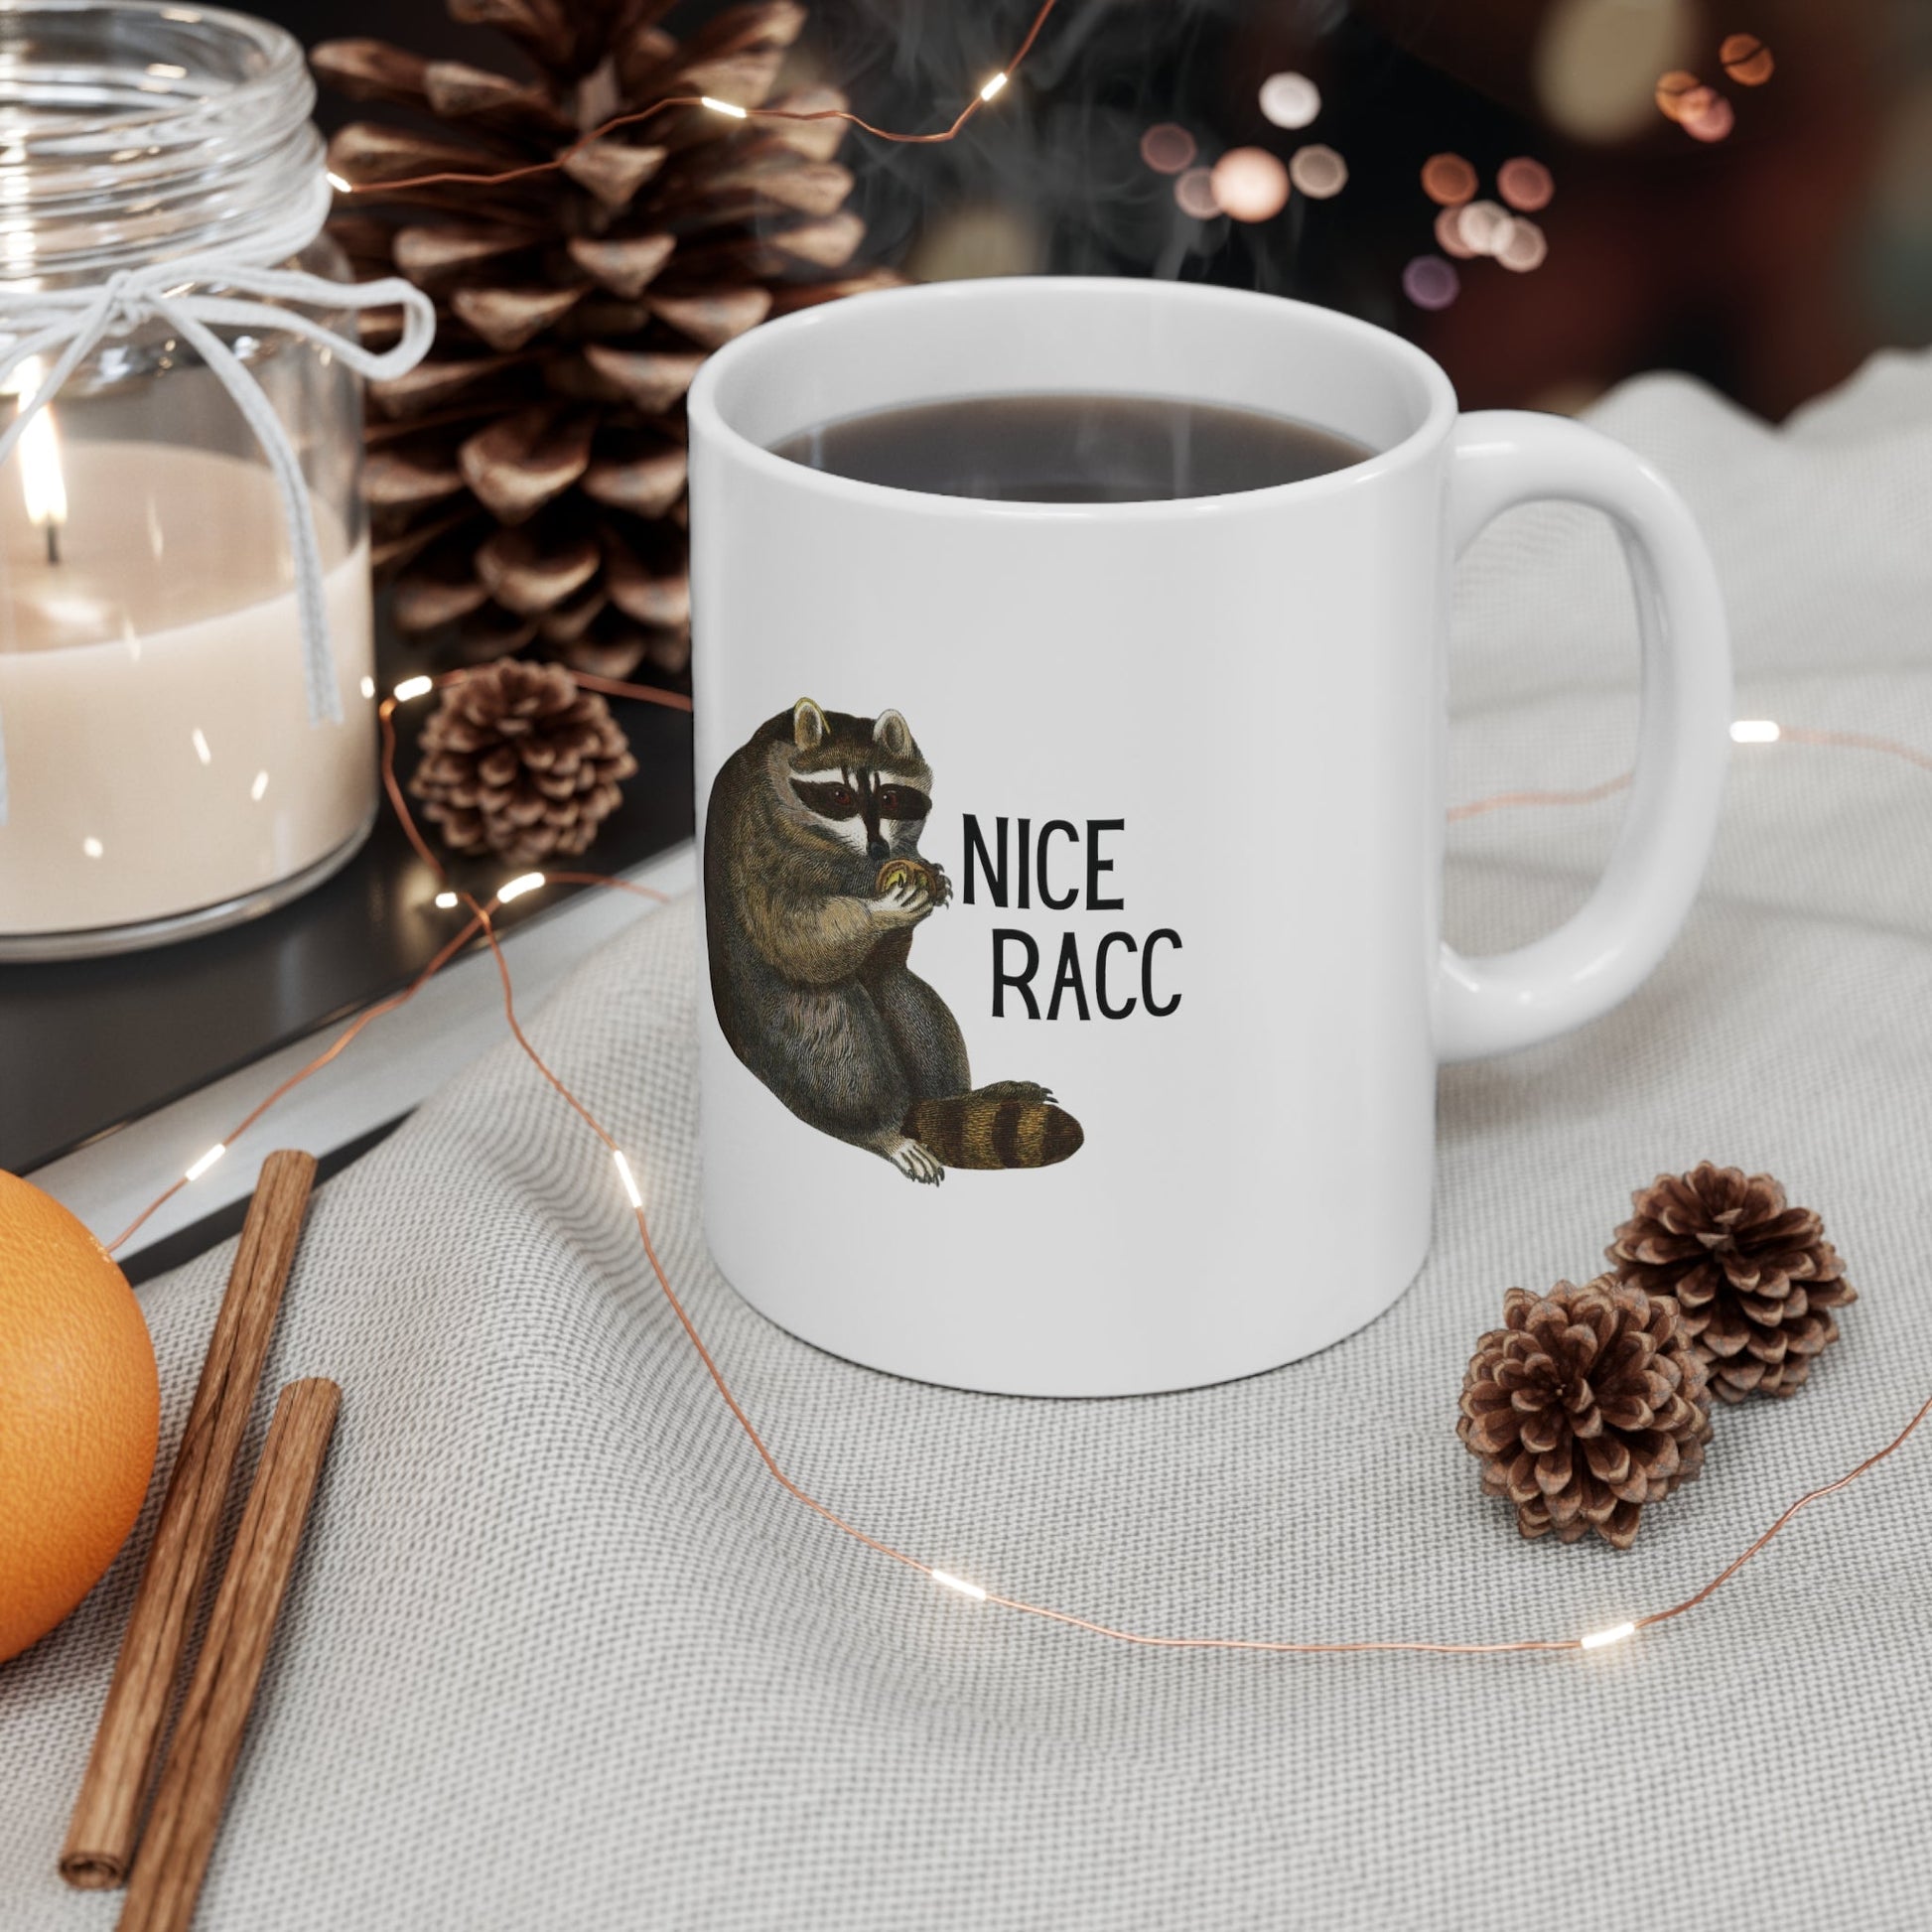 Nice Racc Ceramic Mug 11oz